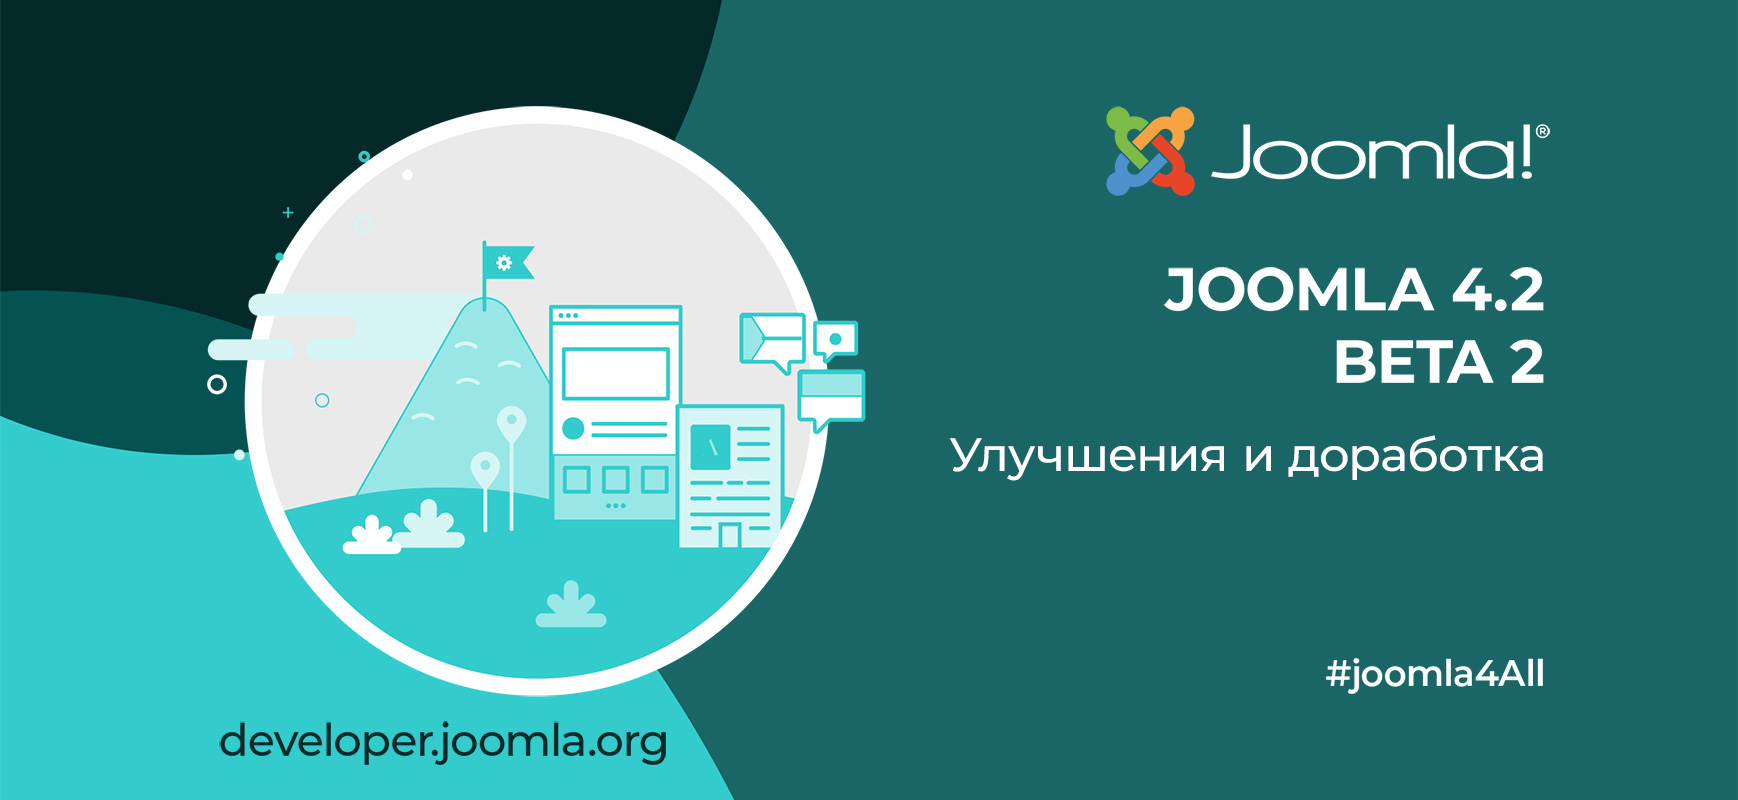 Joomla 4.2 Beta 2 - улучшение и доработка